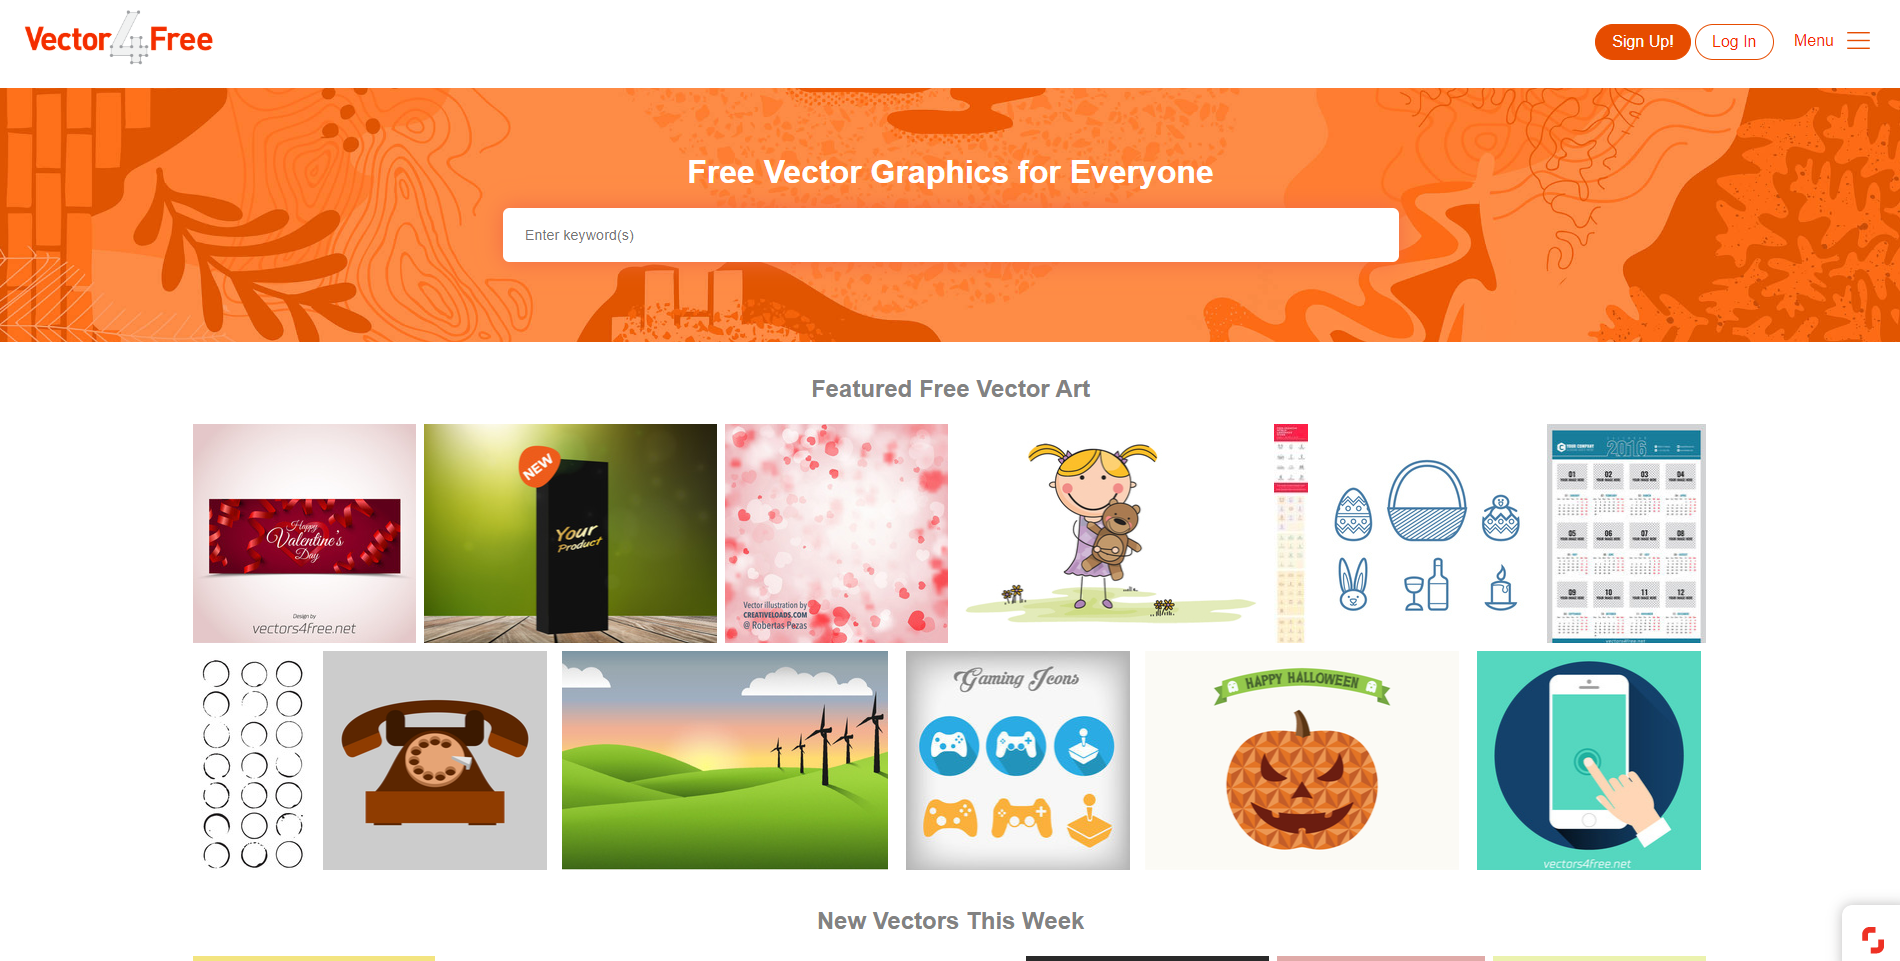 vectors 4 free website free vectors